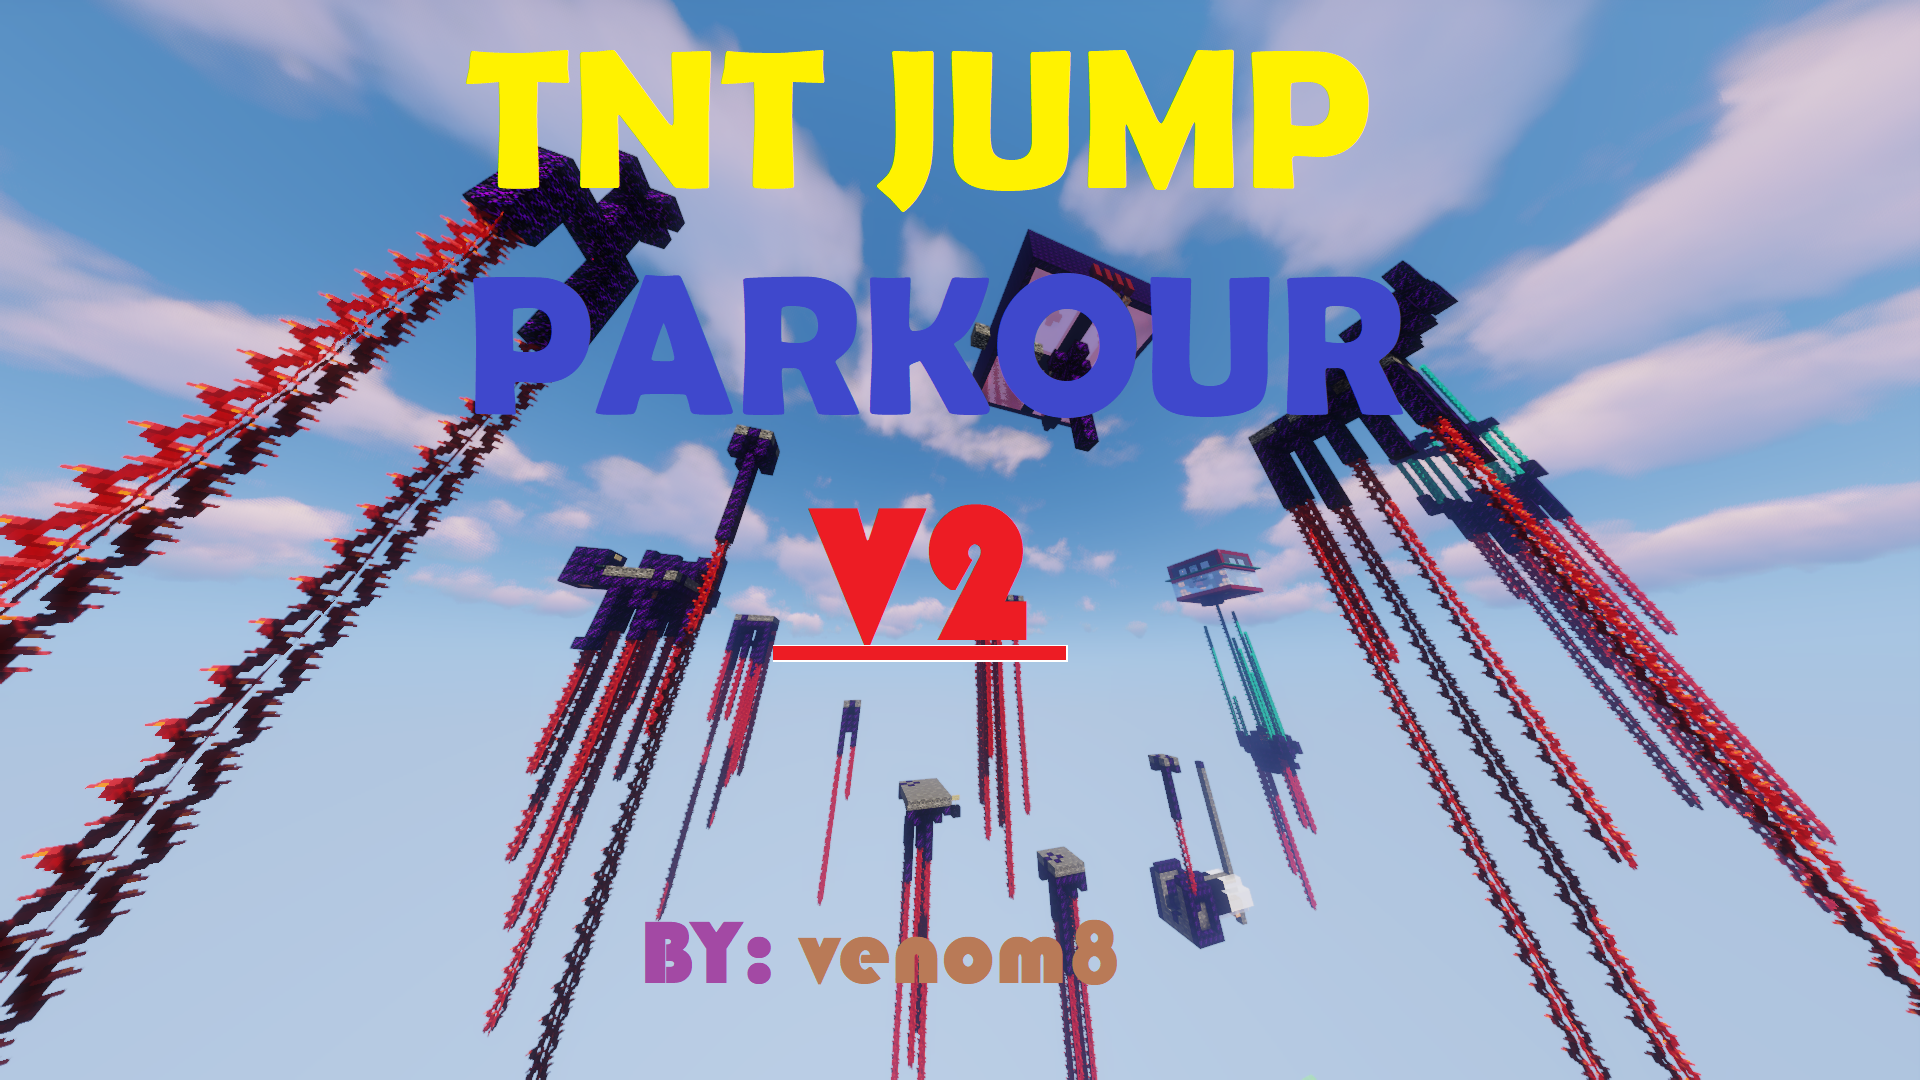 Télécharger TNT Jump Parkour 2! pour Minecraft 1.16.4